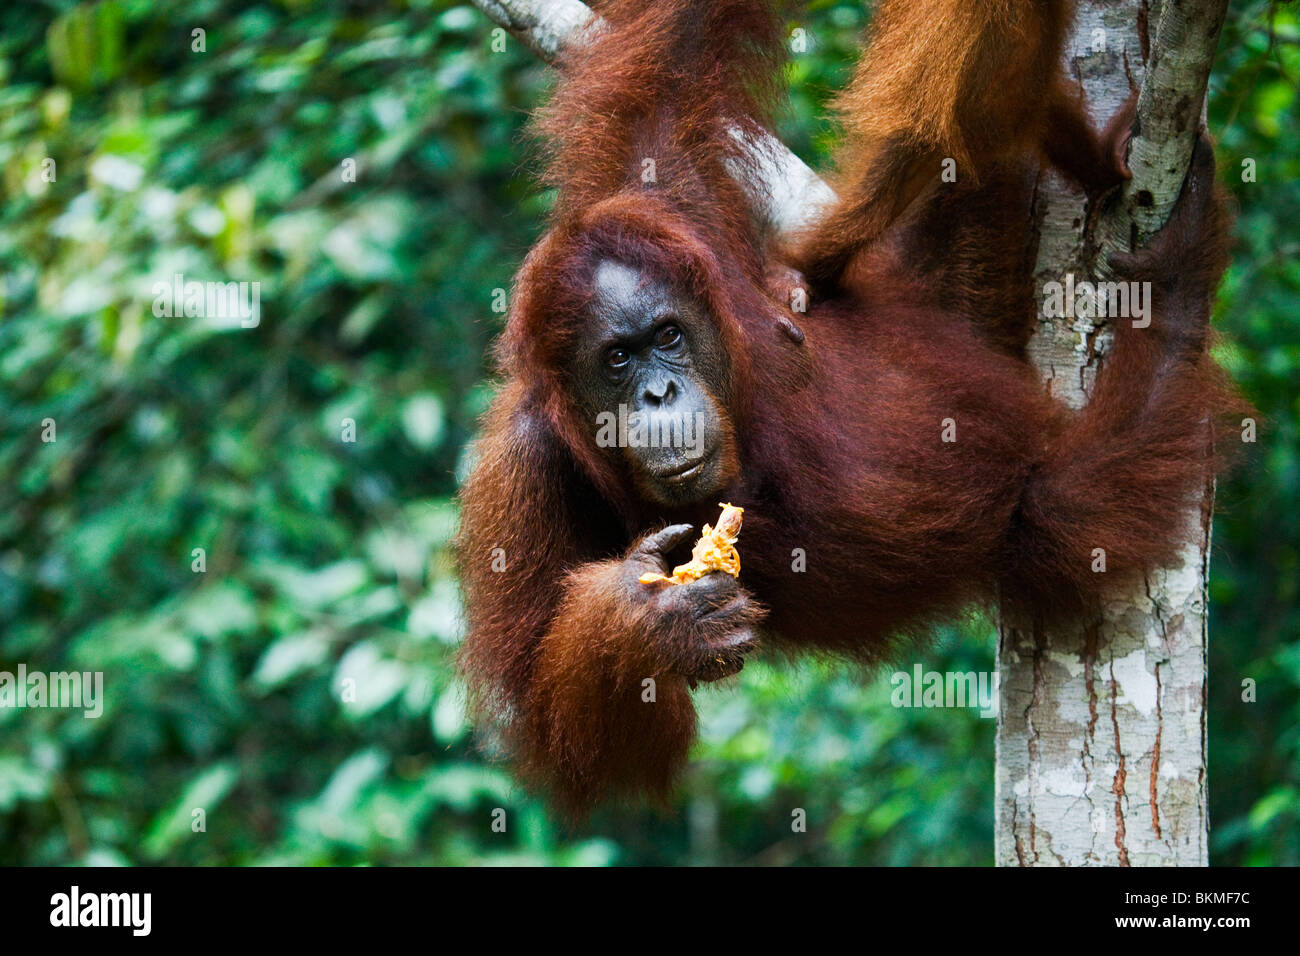 Un orang-outan (Pongo pygmaeus) se nourrissant de fruits à Semenngoh Wildlife Centre. Kuching, Sarawak, Bornéo, Malaisie. Banque D'Images